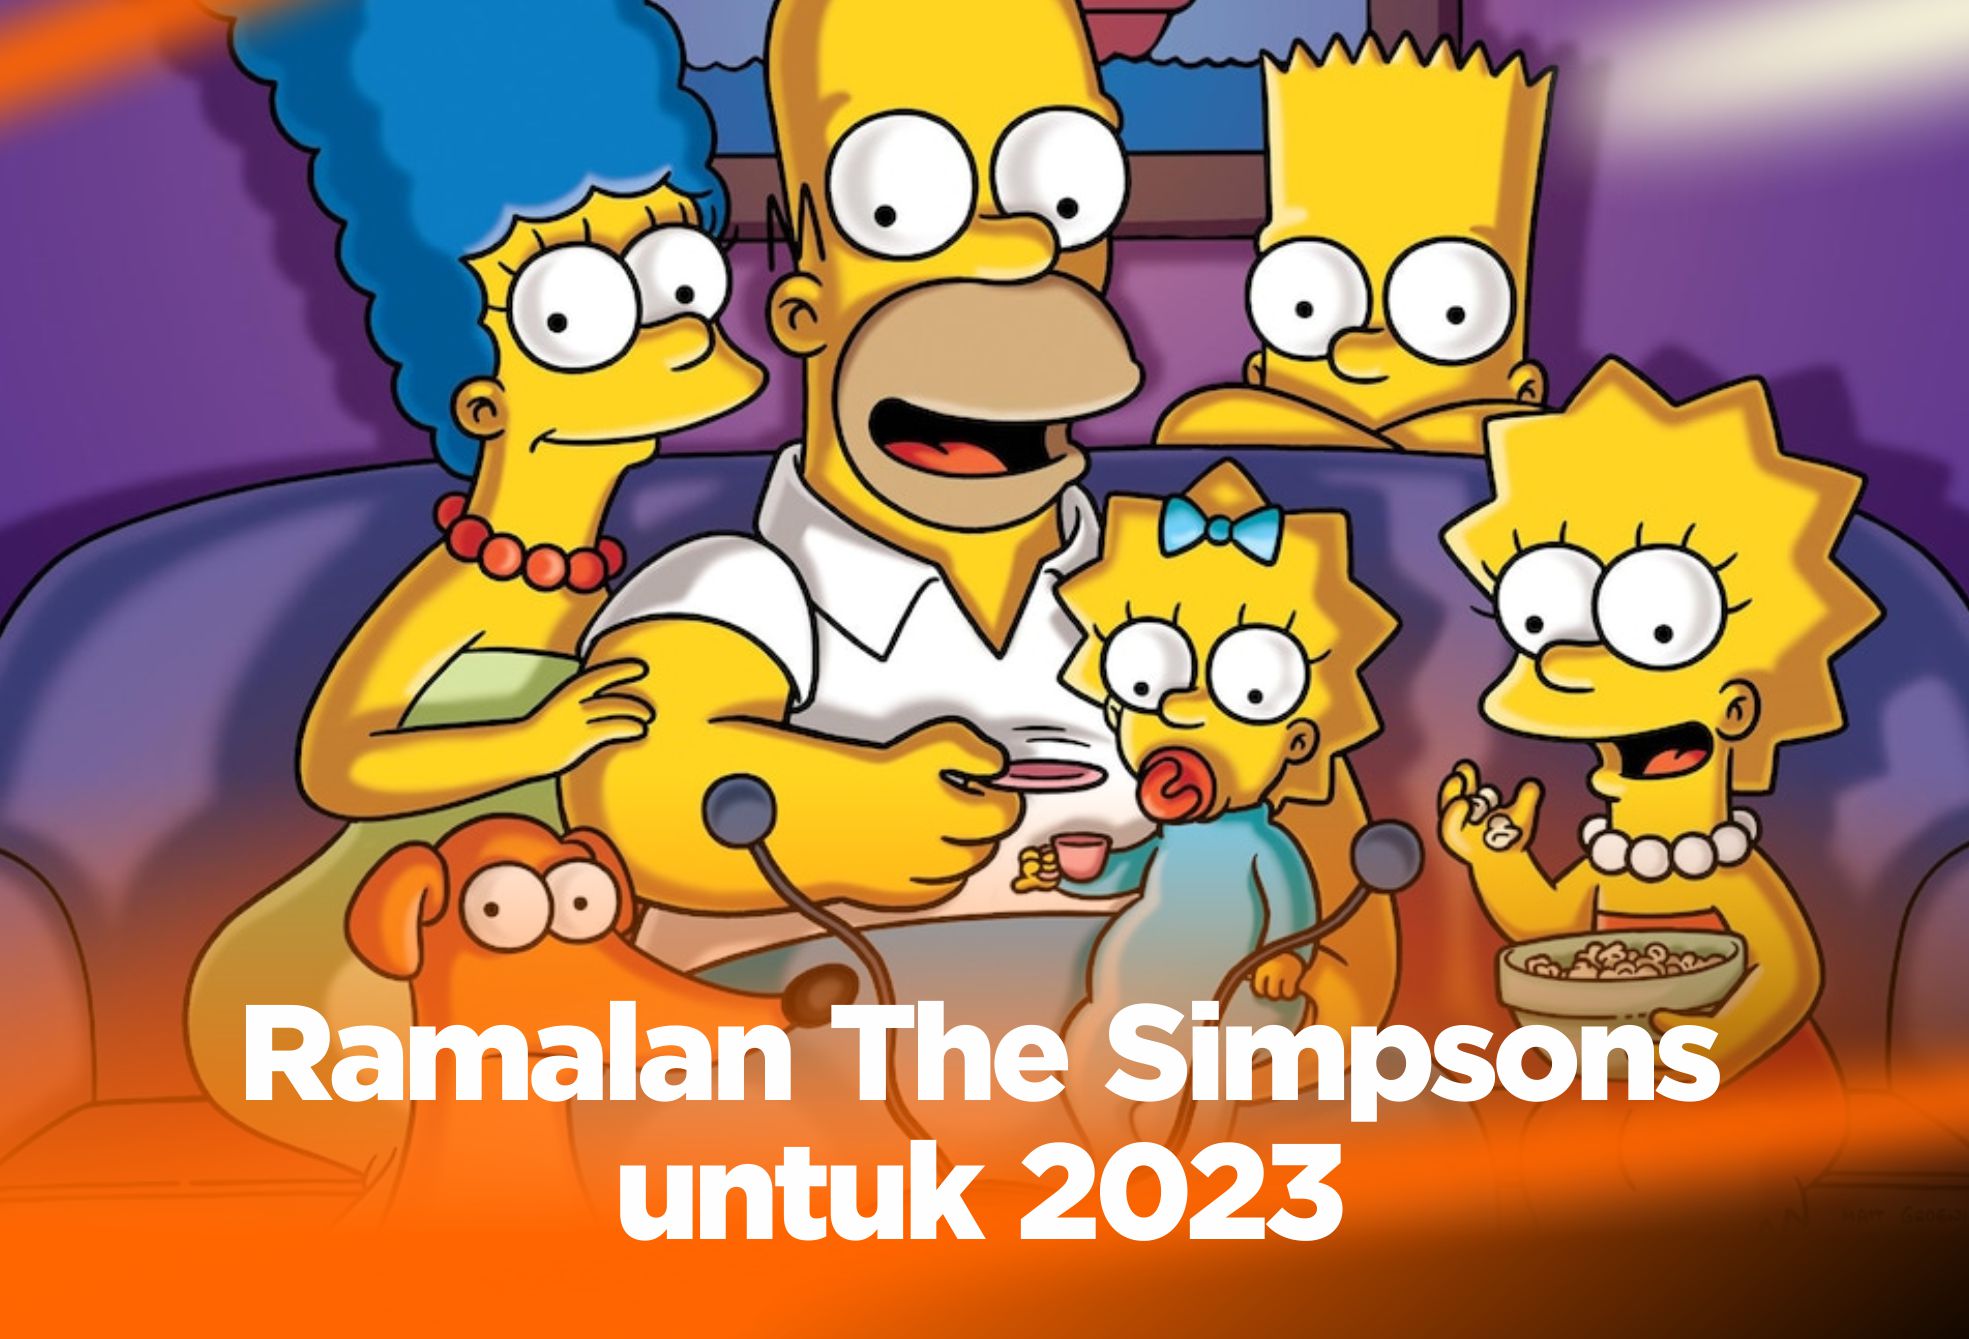 Ramalan The Simpsons untuk 2023